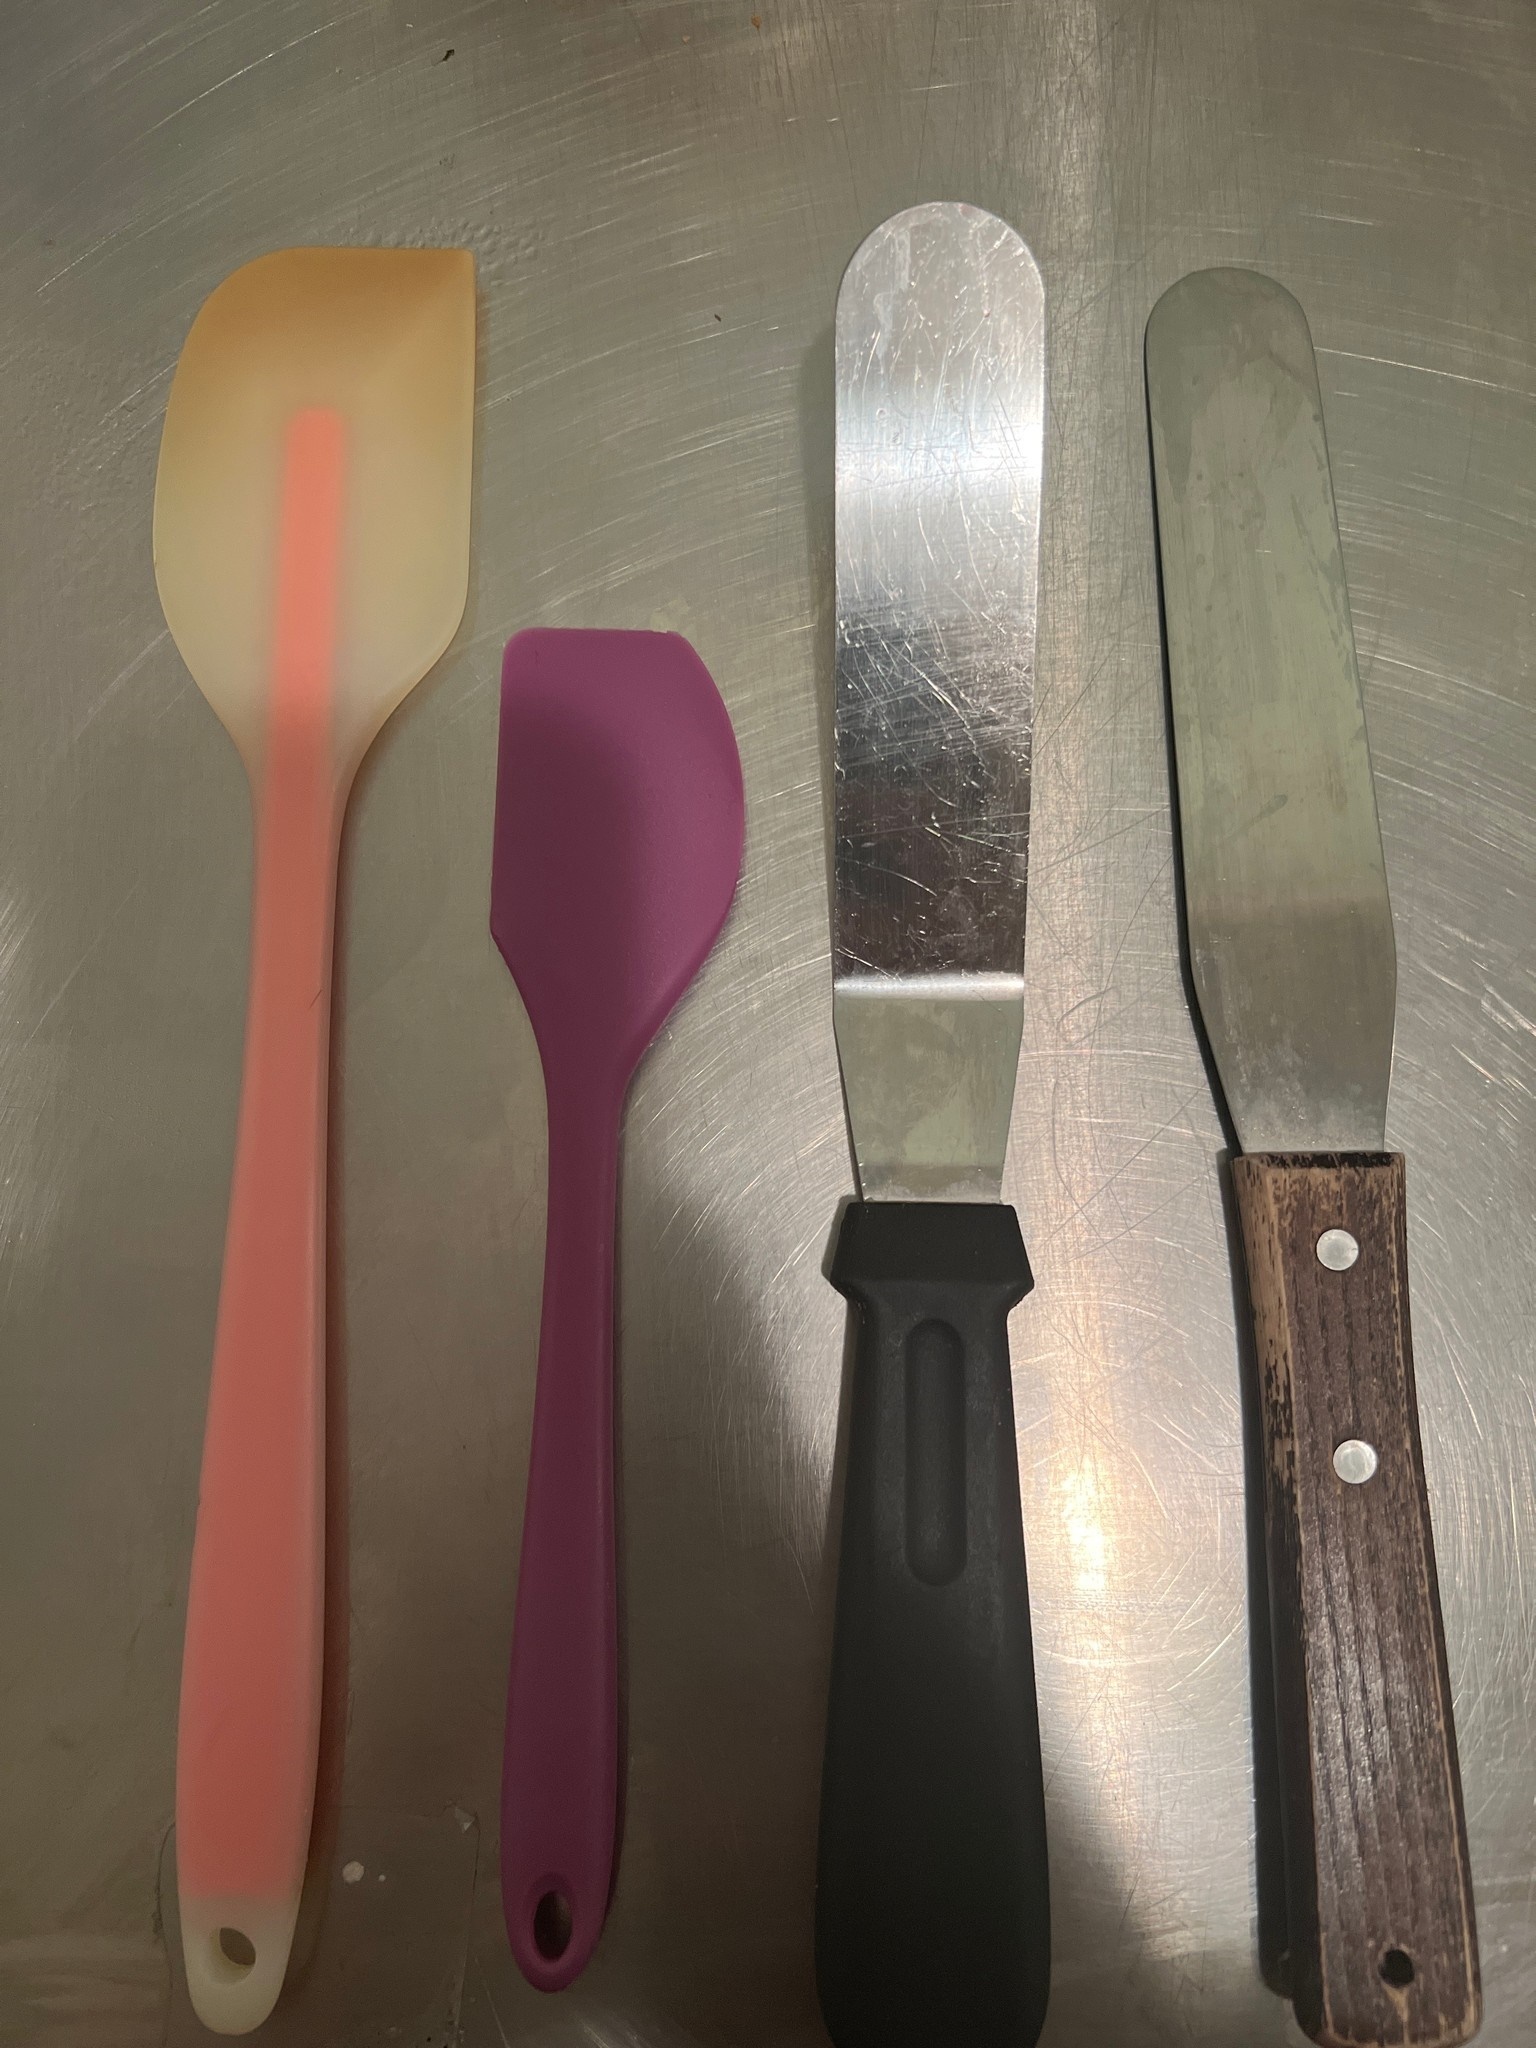 Four spatulas.